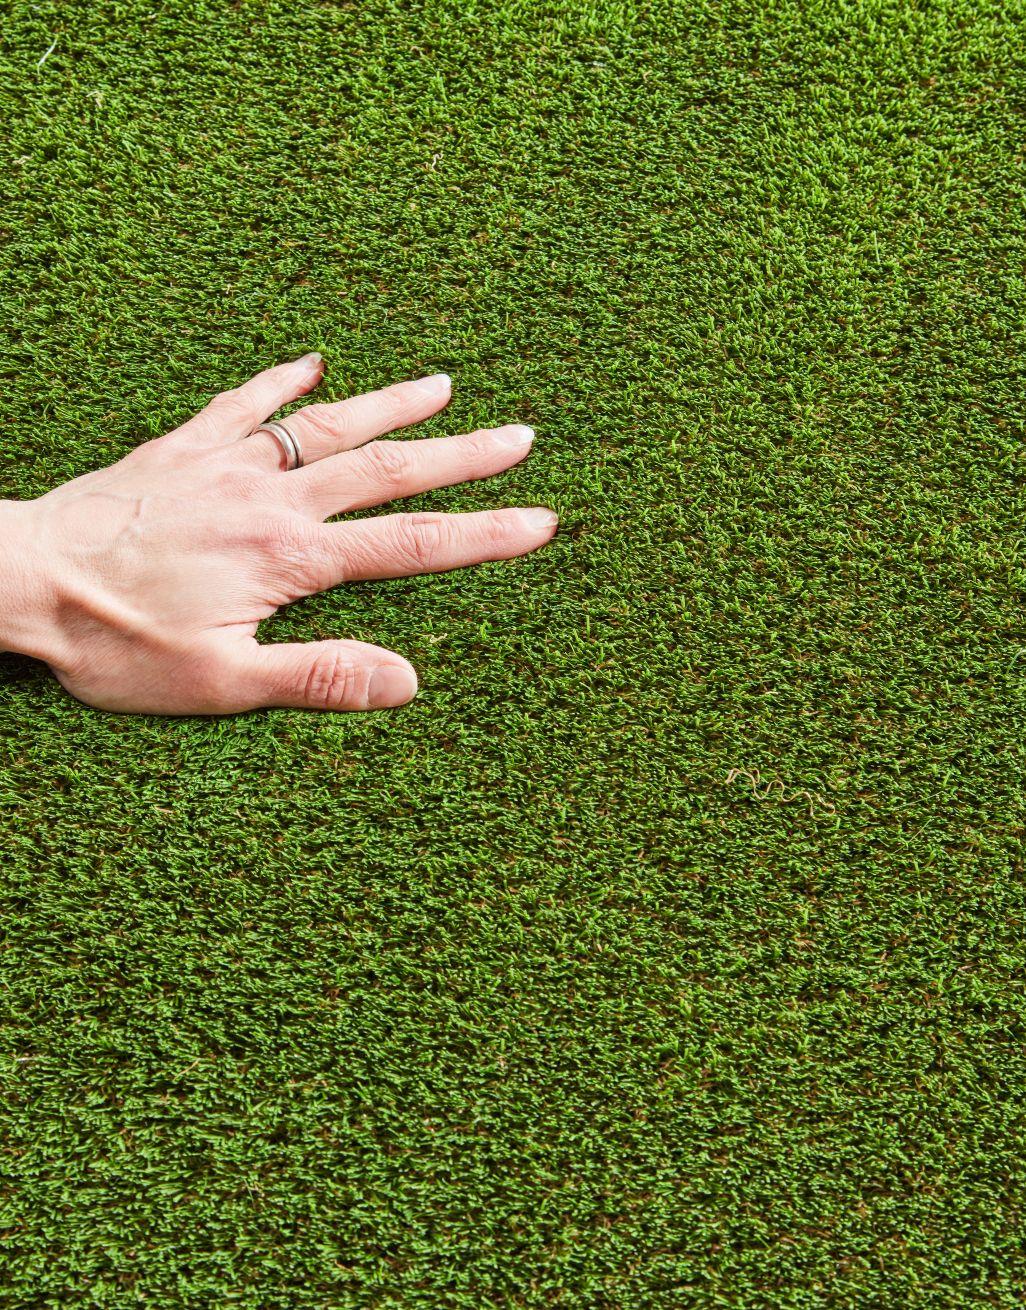 Camp Nou Artificial Grass | Flooring Superstore